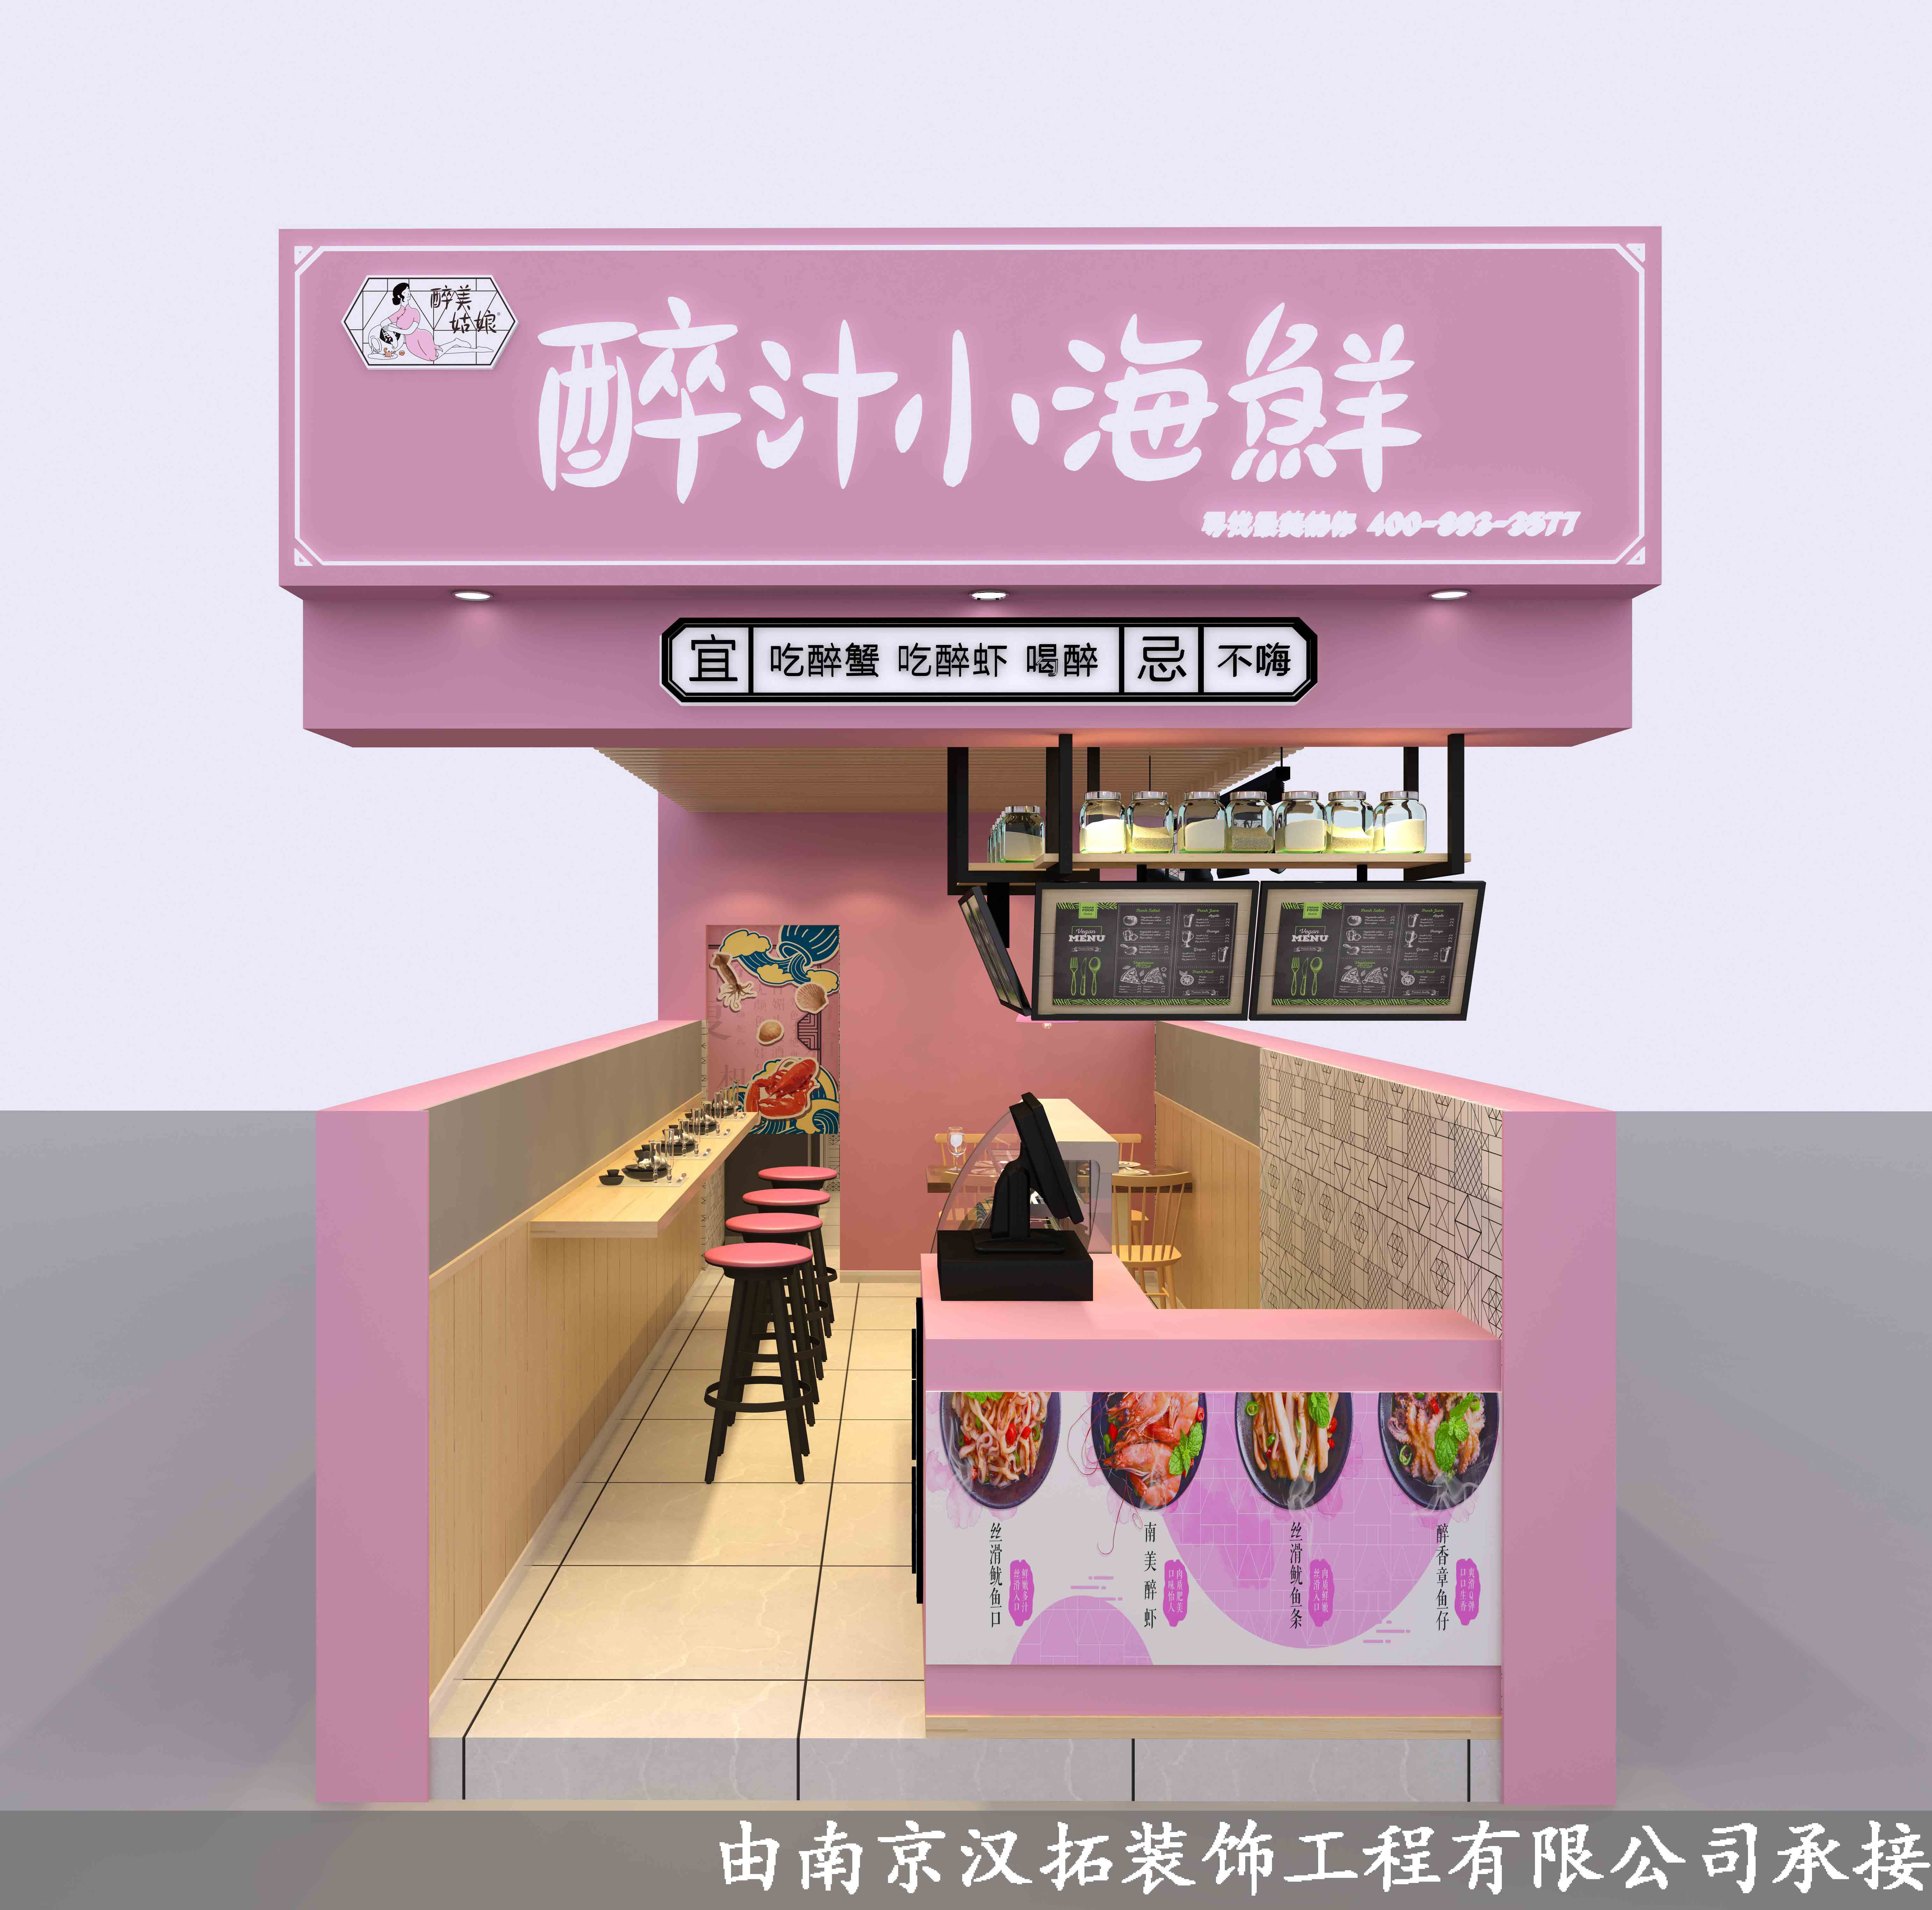 马群佳源梦想广场-北京烤鸭店项目 正式开工